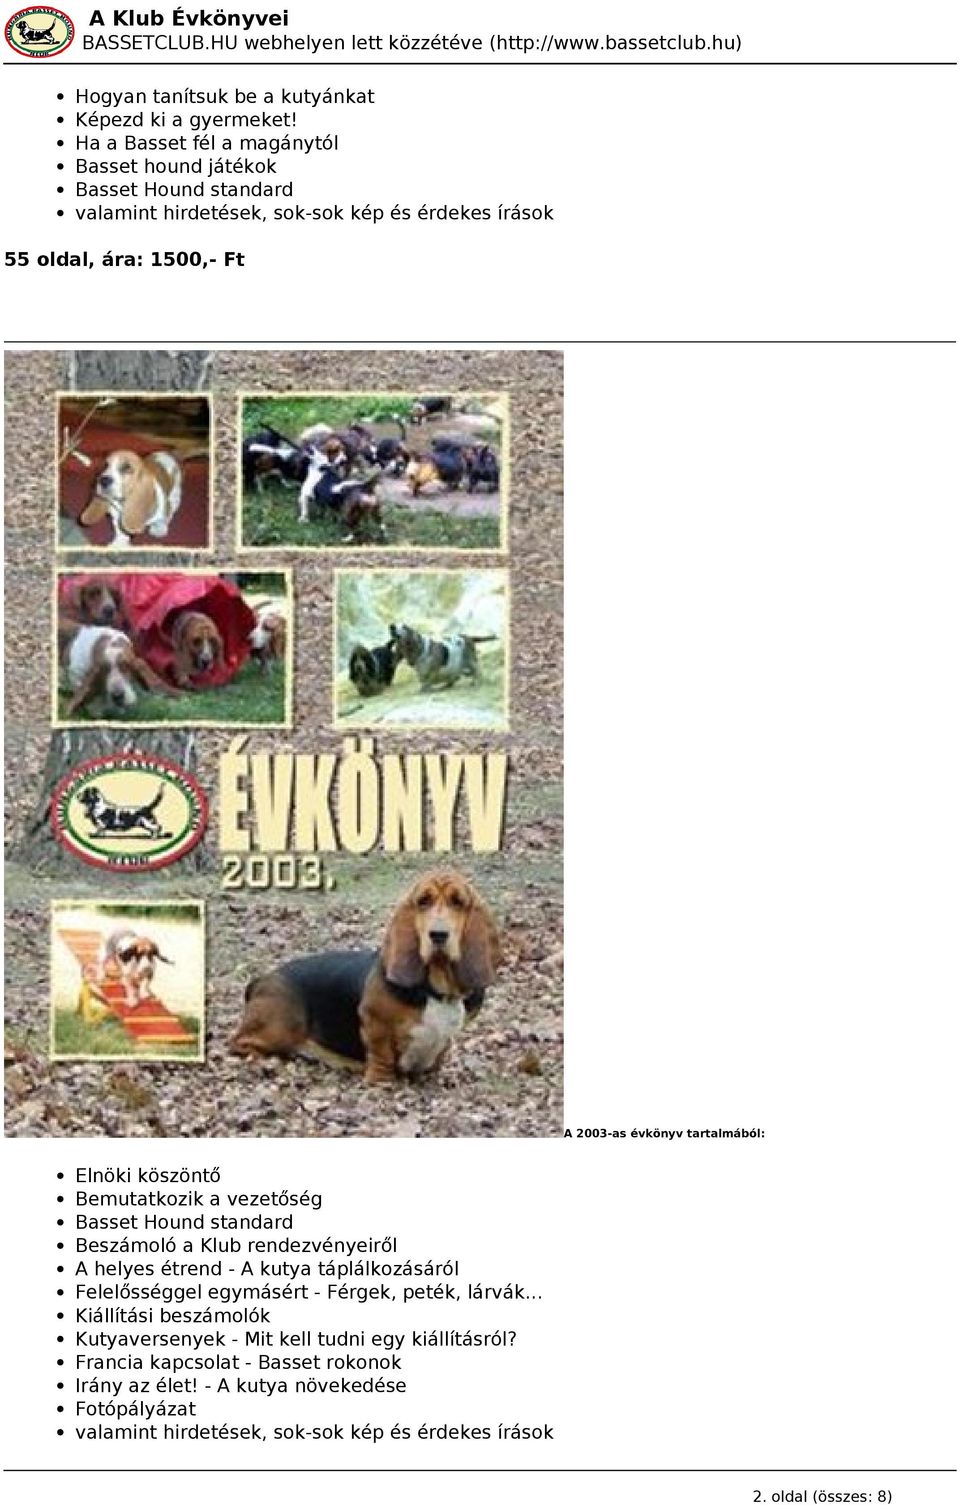 évkönyv tartalmából: Elnöki köszöntő Bemutatkozik a vezetőség Basset Hound standard Beszámoló a Klub rendezvényeiről A helyes étrend - A kutya táplálkozásáról